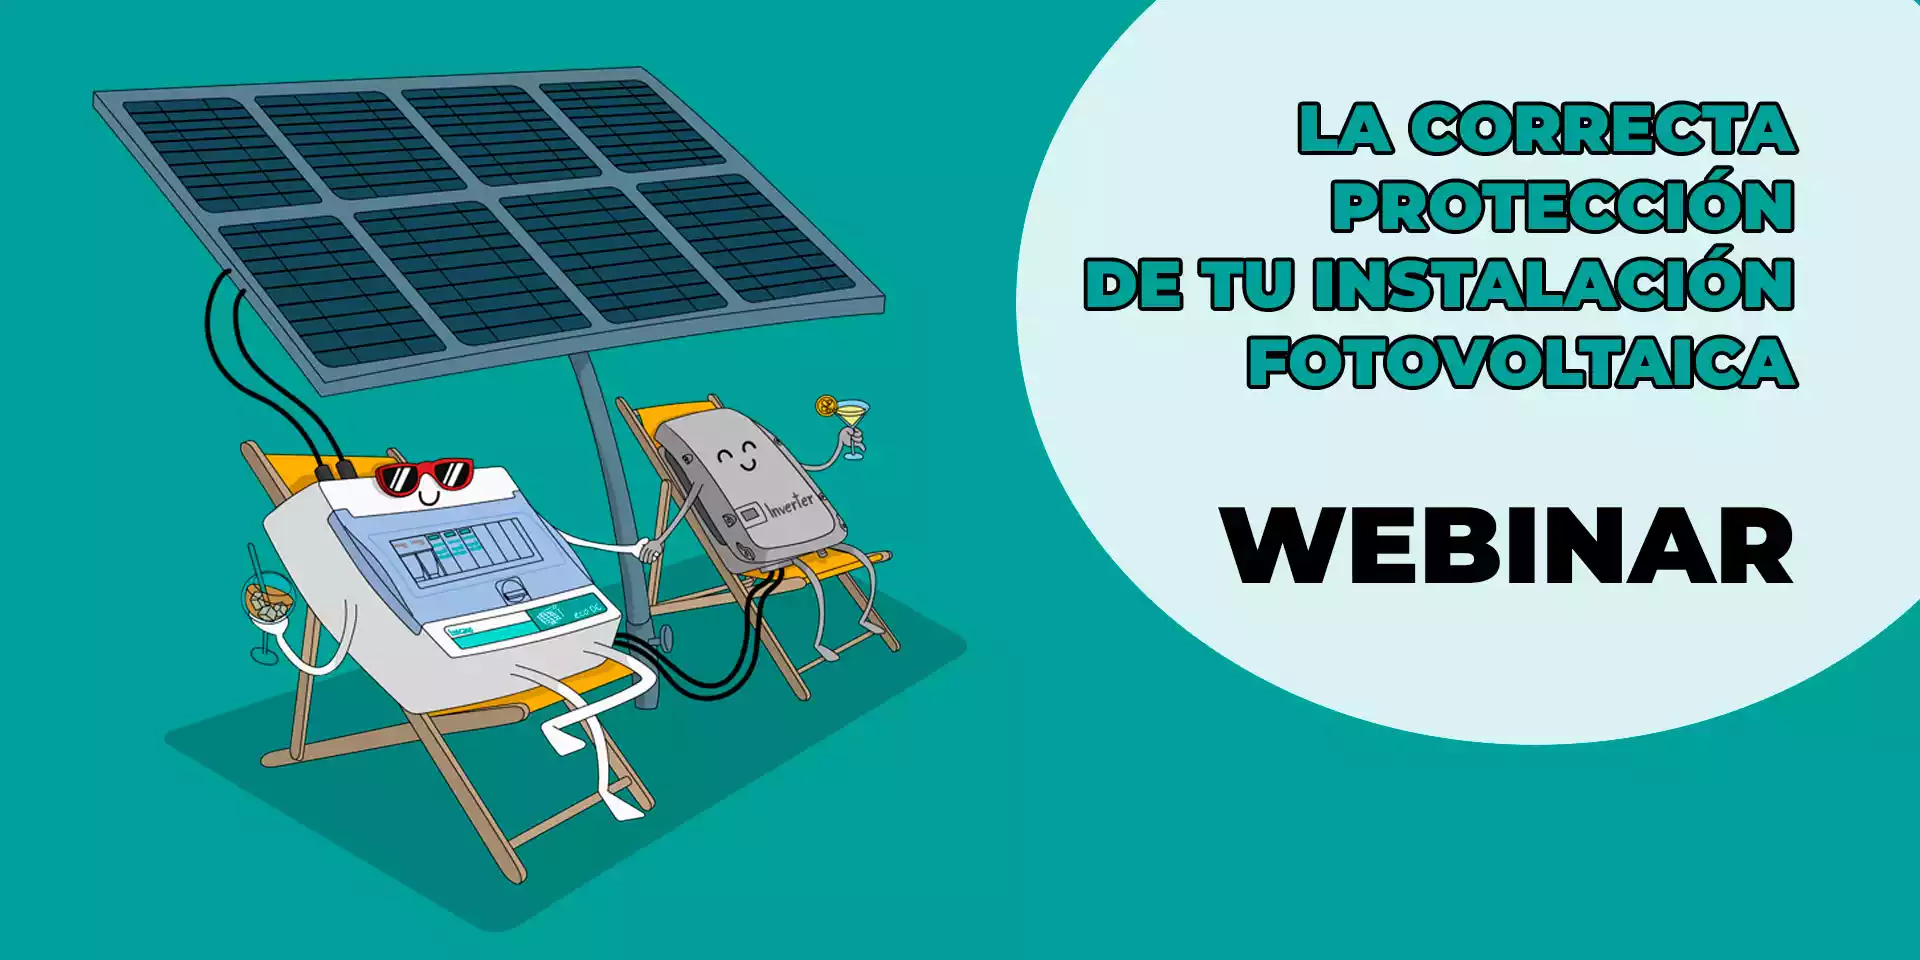 formacion webinar La correcta proteccion de tu instalacion fotovoltaica2